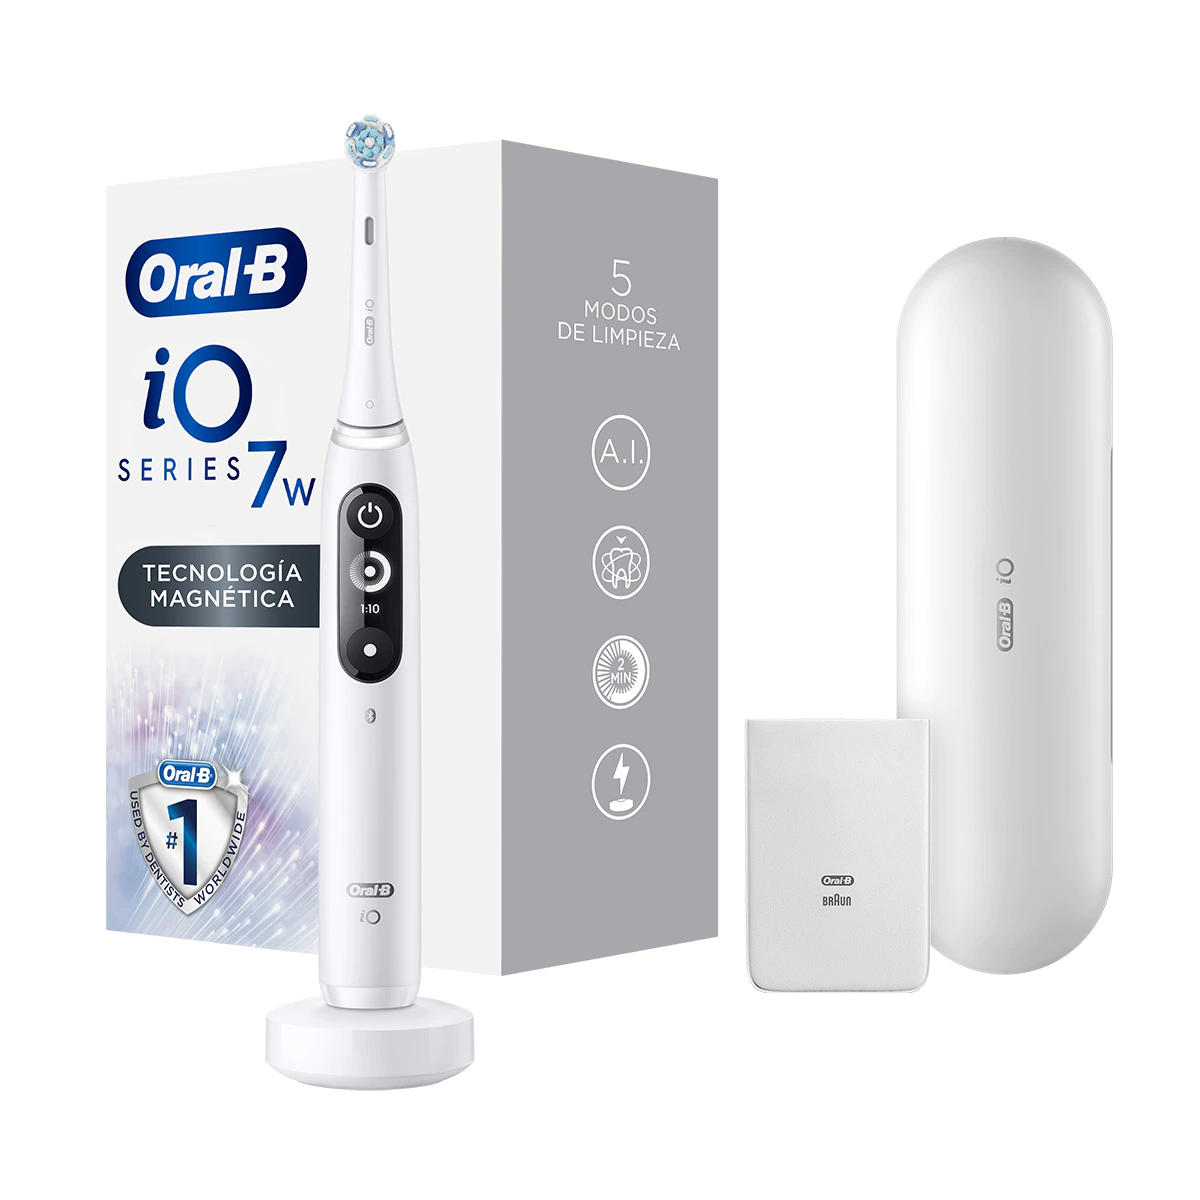 Cepillo de dientes eléctrico Braun Oral-B iO 7w 5 modos de limpieza